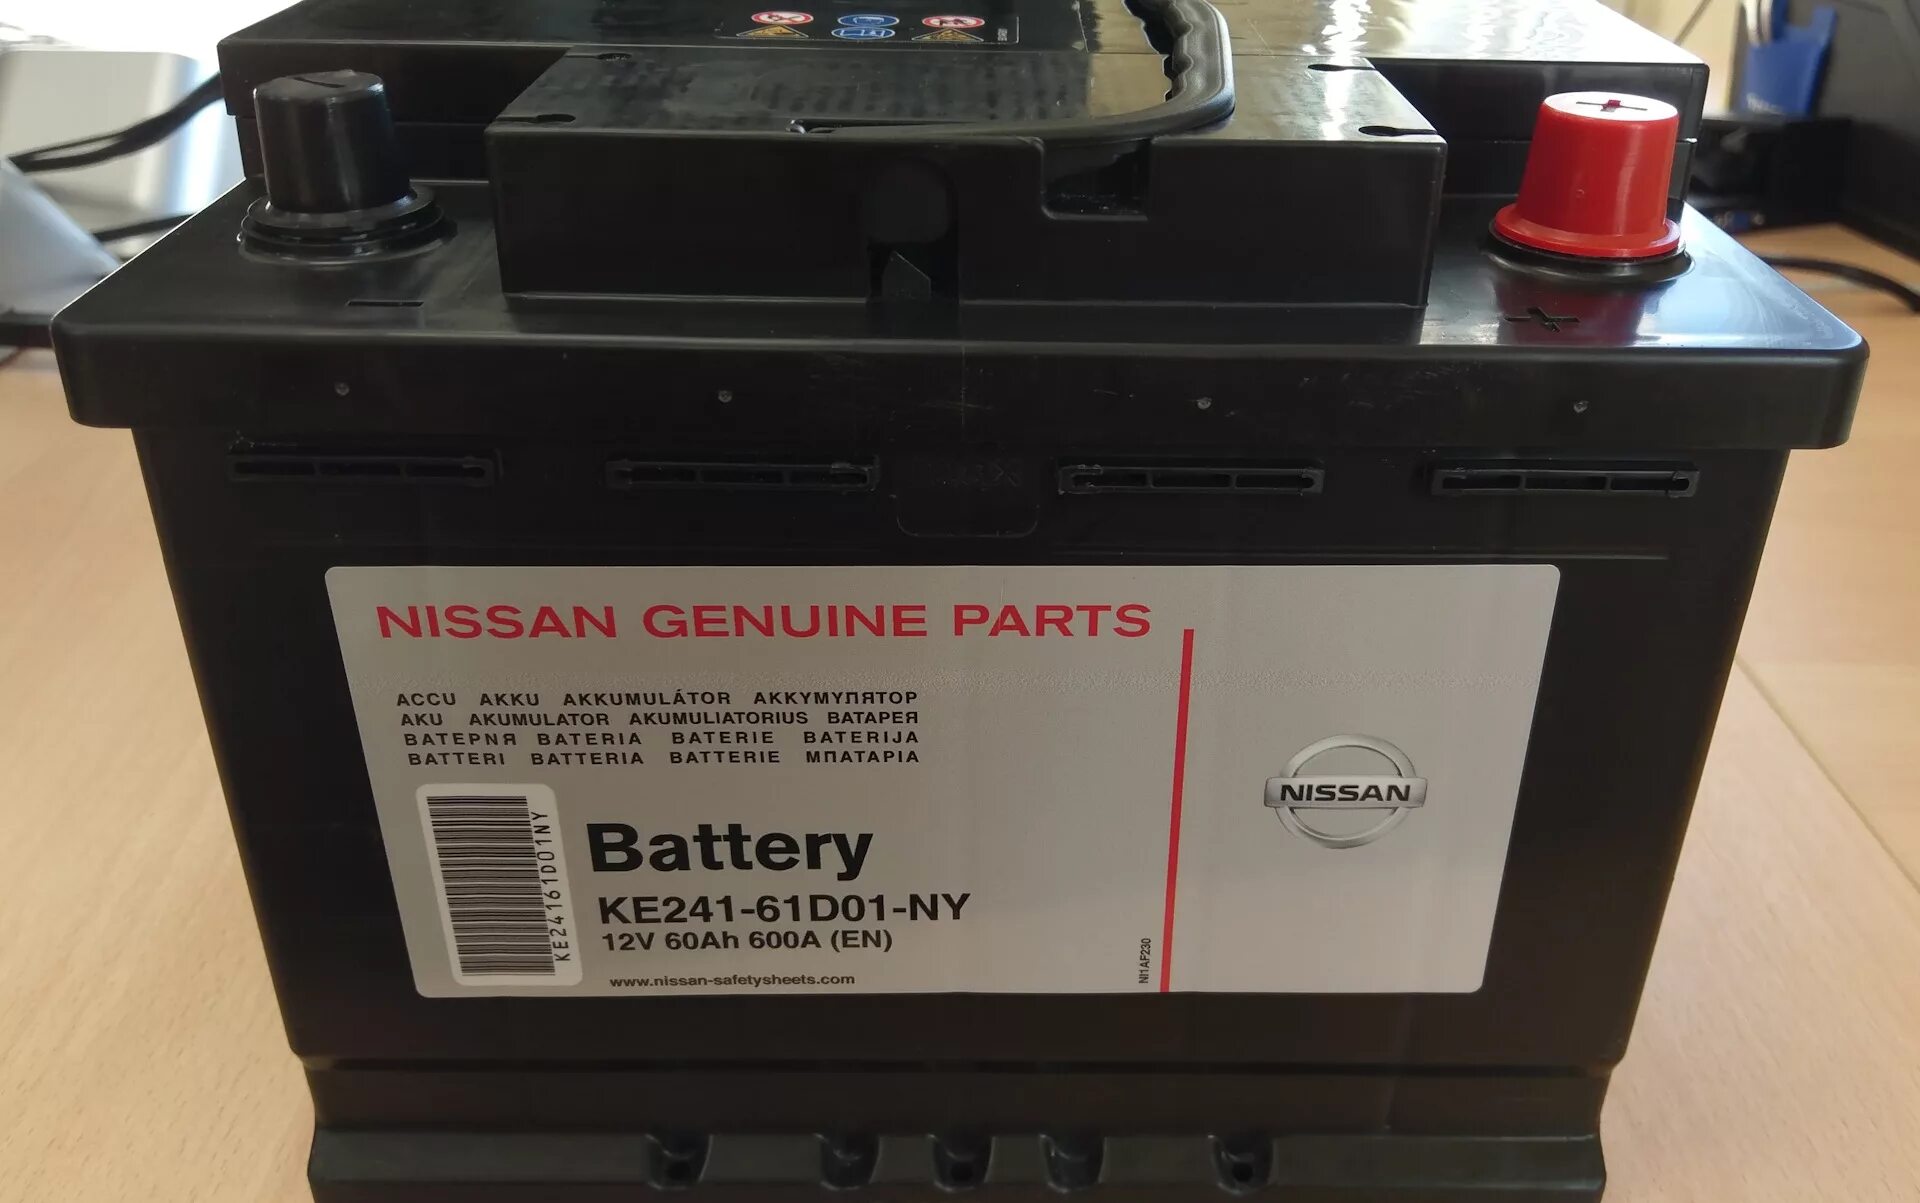 Аккумулятор Nissan Genuine Parts ke241. Аккумулятор Nissan ke241-70. Ke24161d00ny Nissan аккумулятор. Nissan аккумулятор ke24175e01ny. Аккумулятор автомобильный ниссан